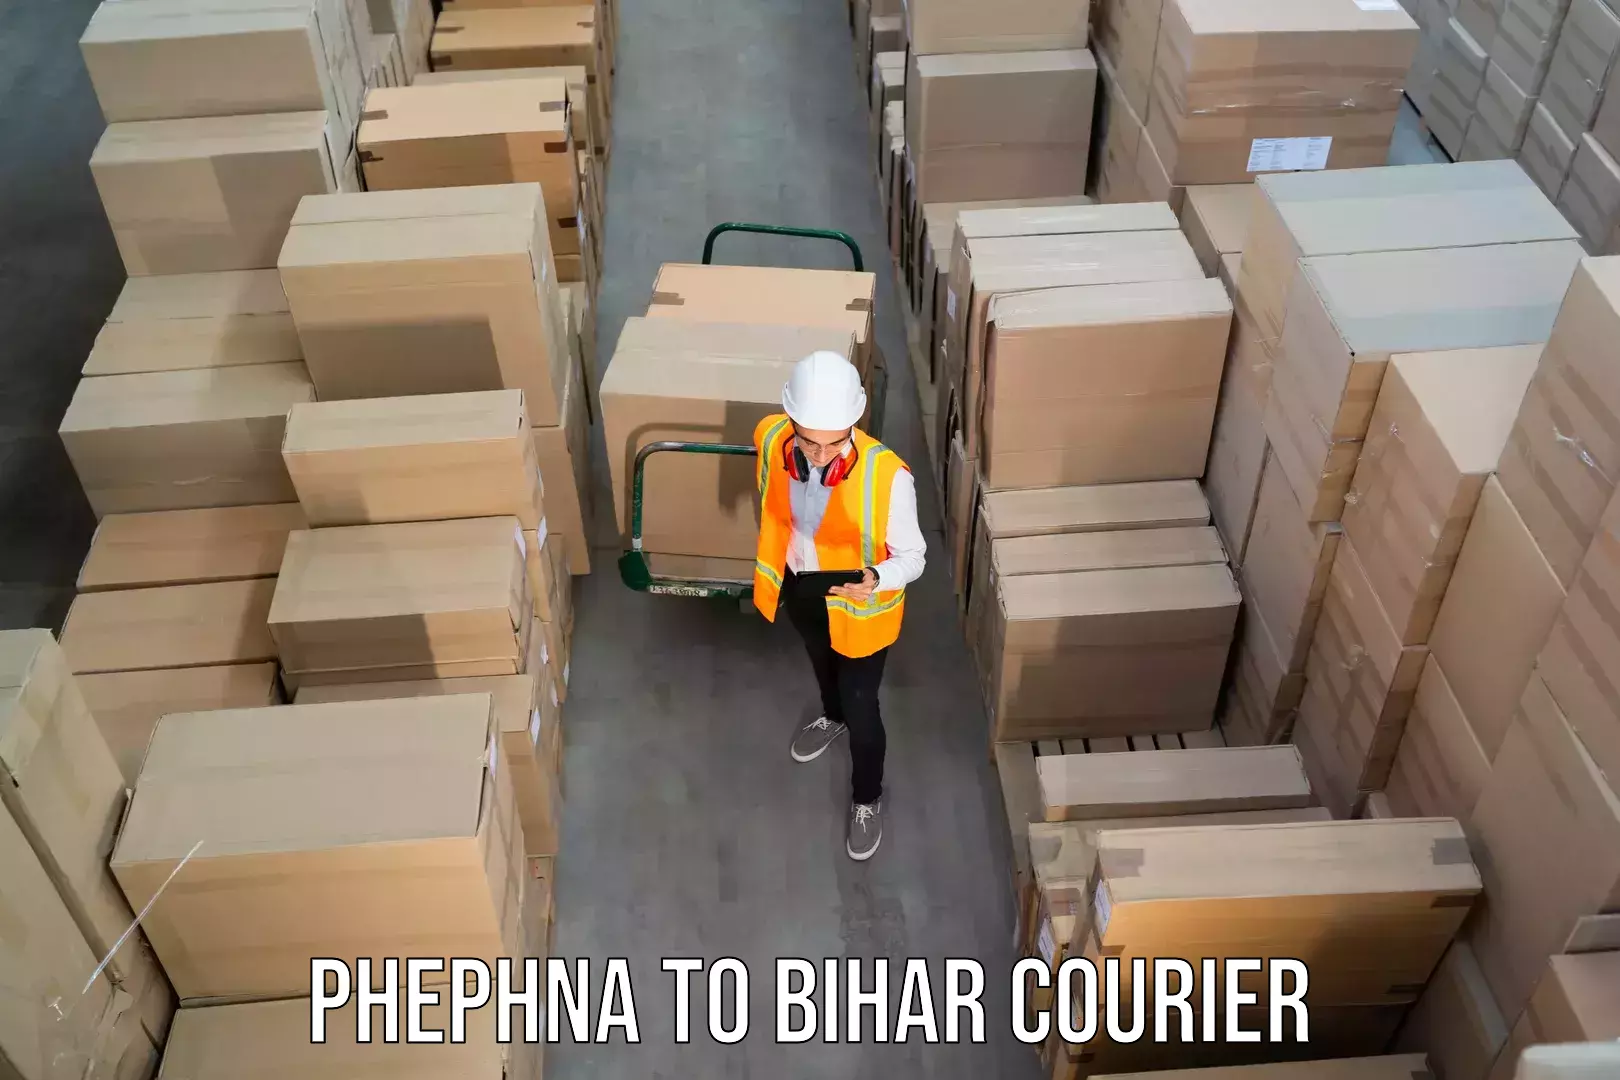 Nationwide parcel services Phephna to Aurangabad Bihar